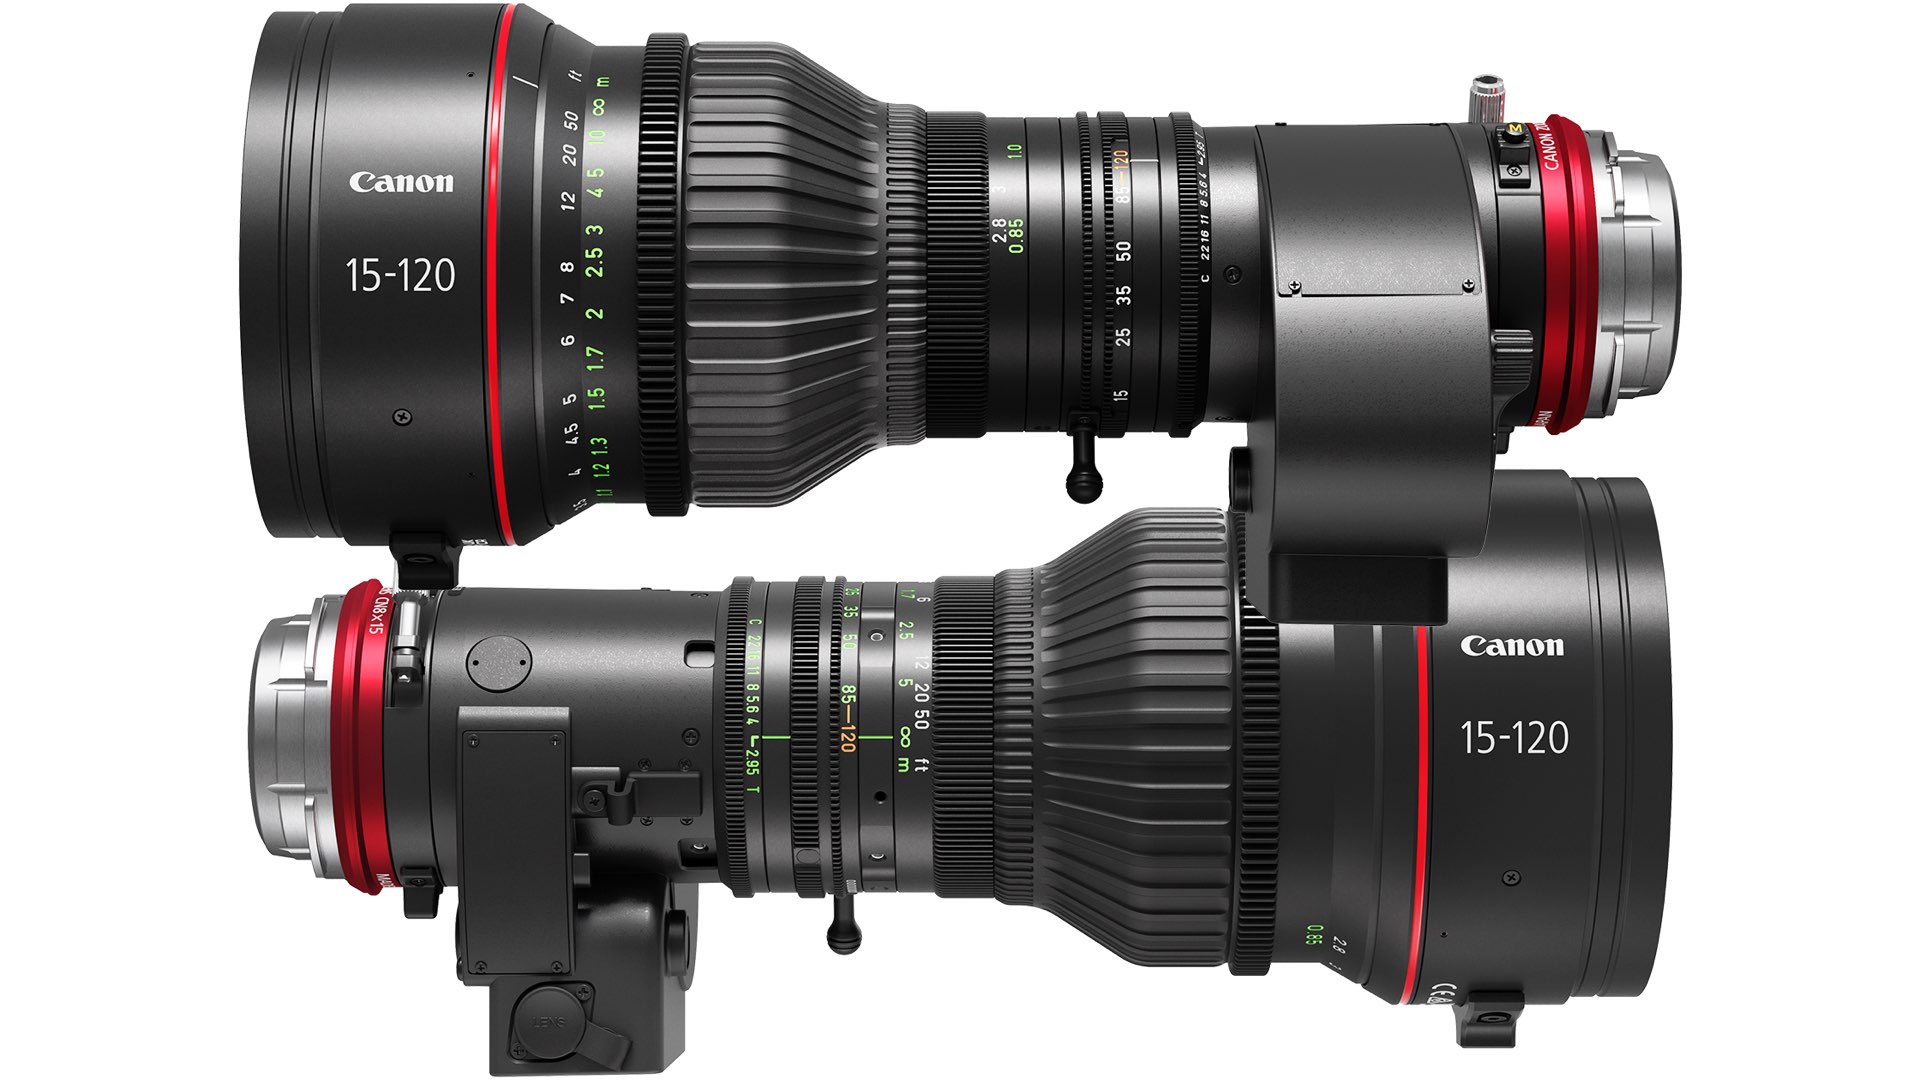 Canon Introduces a new High-End Cinema Lens: CINE-SERVO 15-120mm